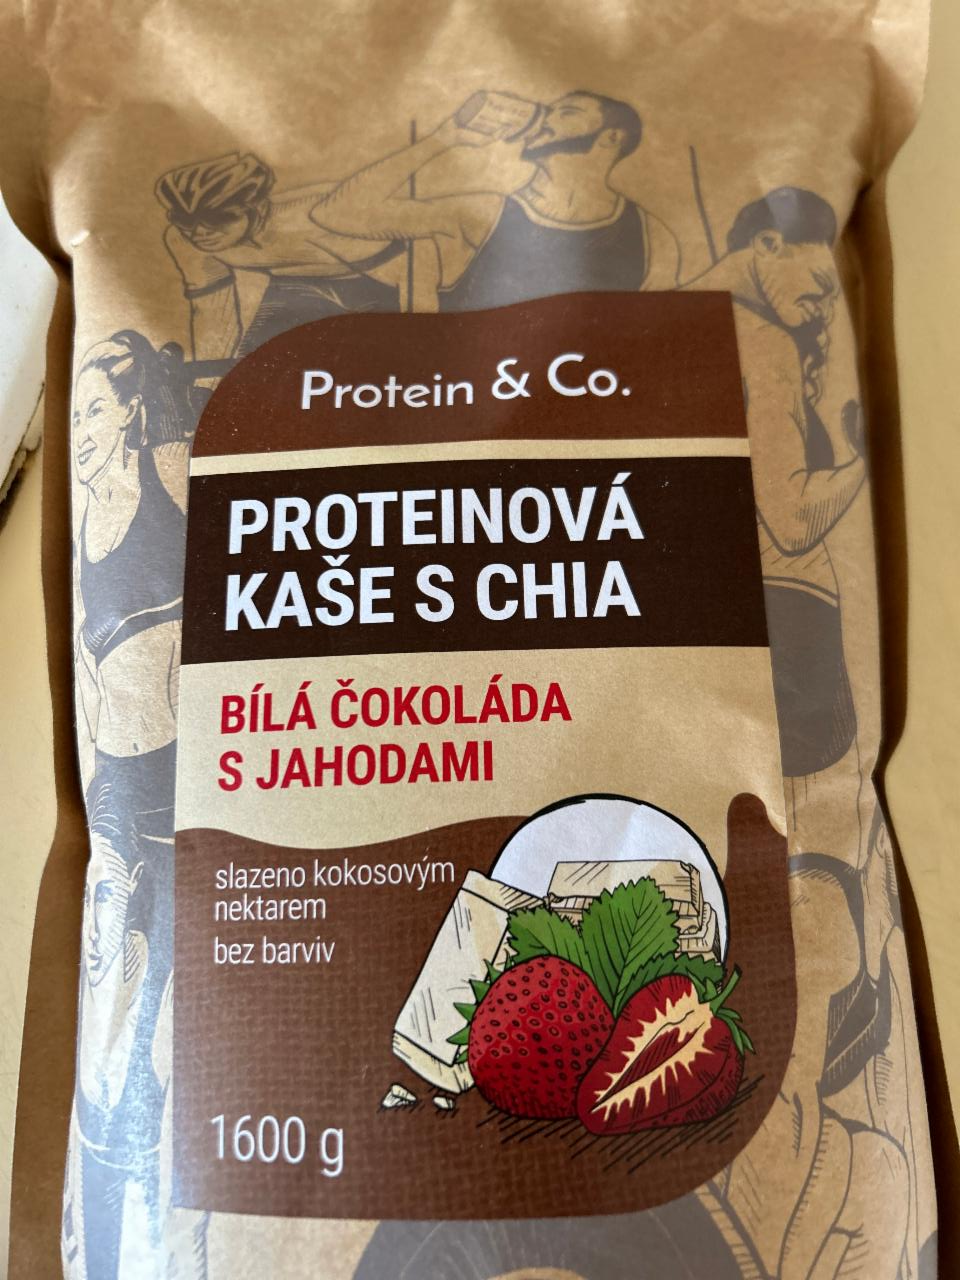 Fotografie - Proteinová kaše s chia Bílá čokoláda s jahodami Protein & Co.